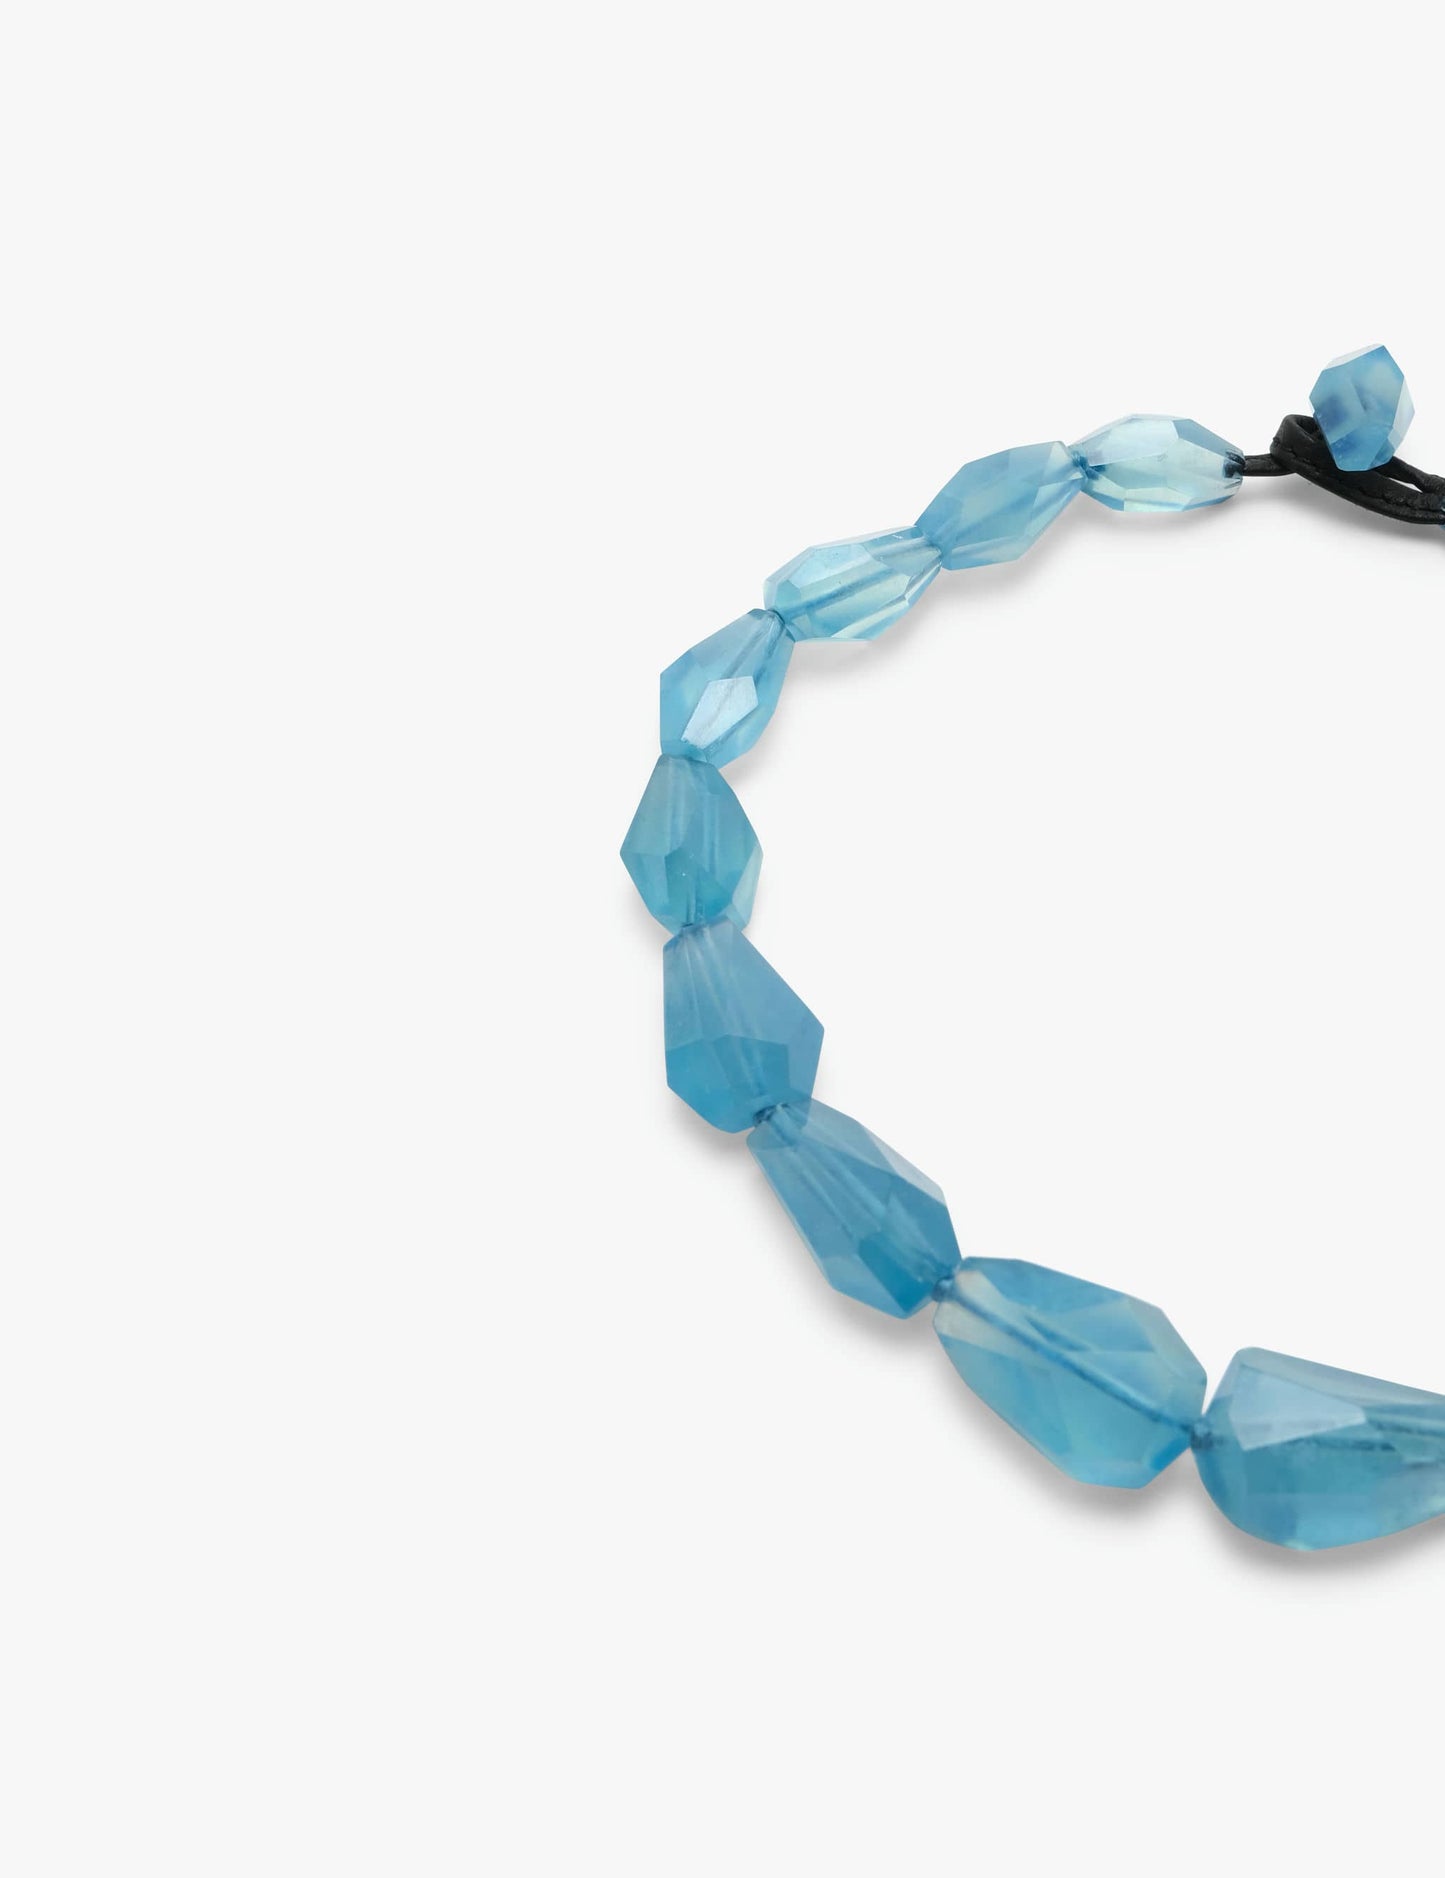 Necklace: aquamarine